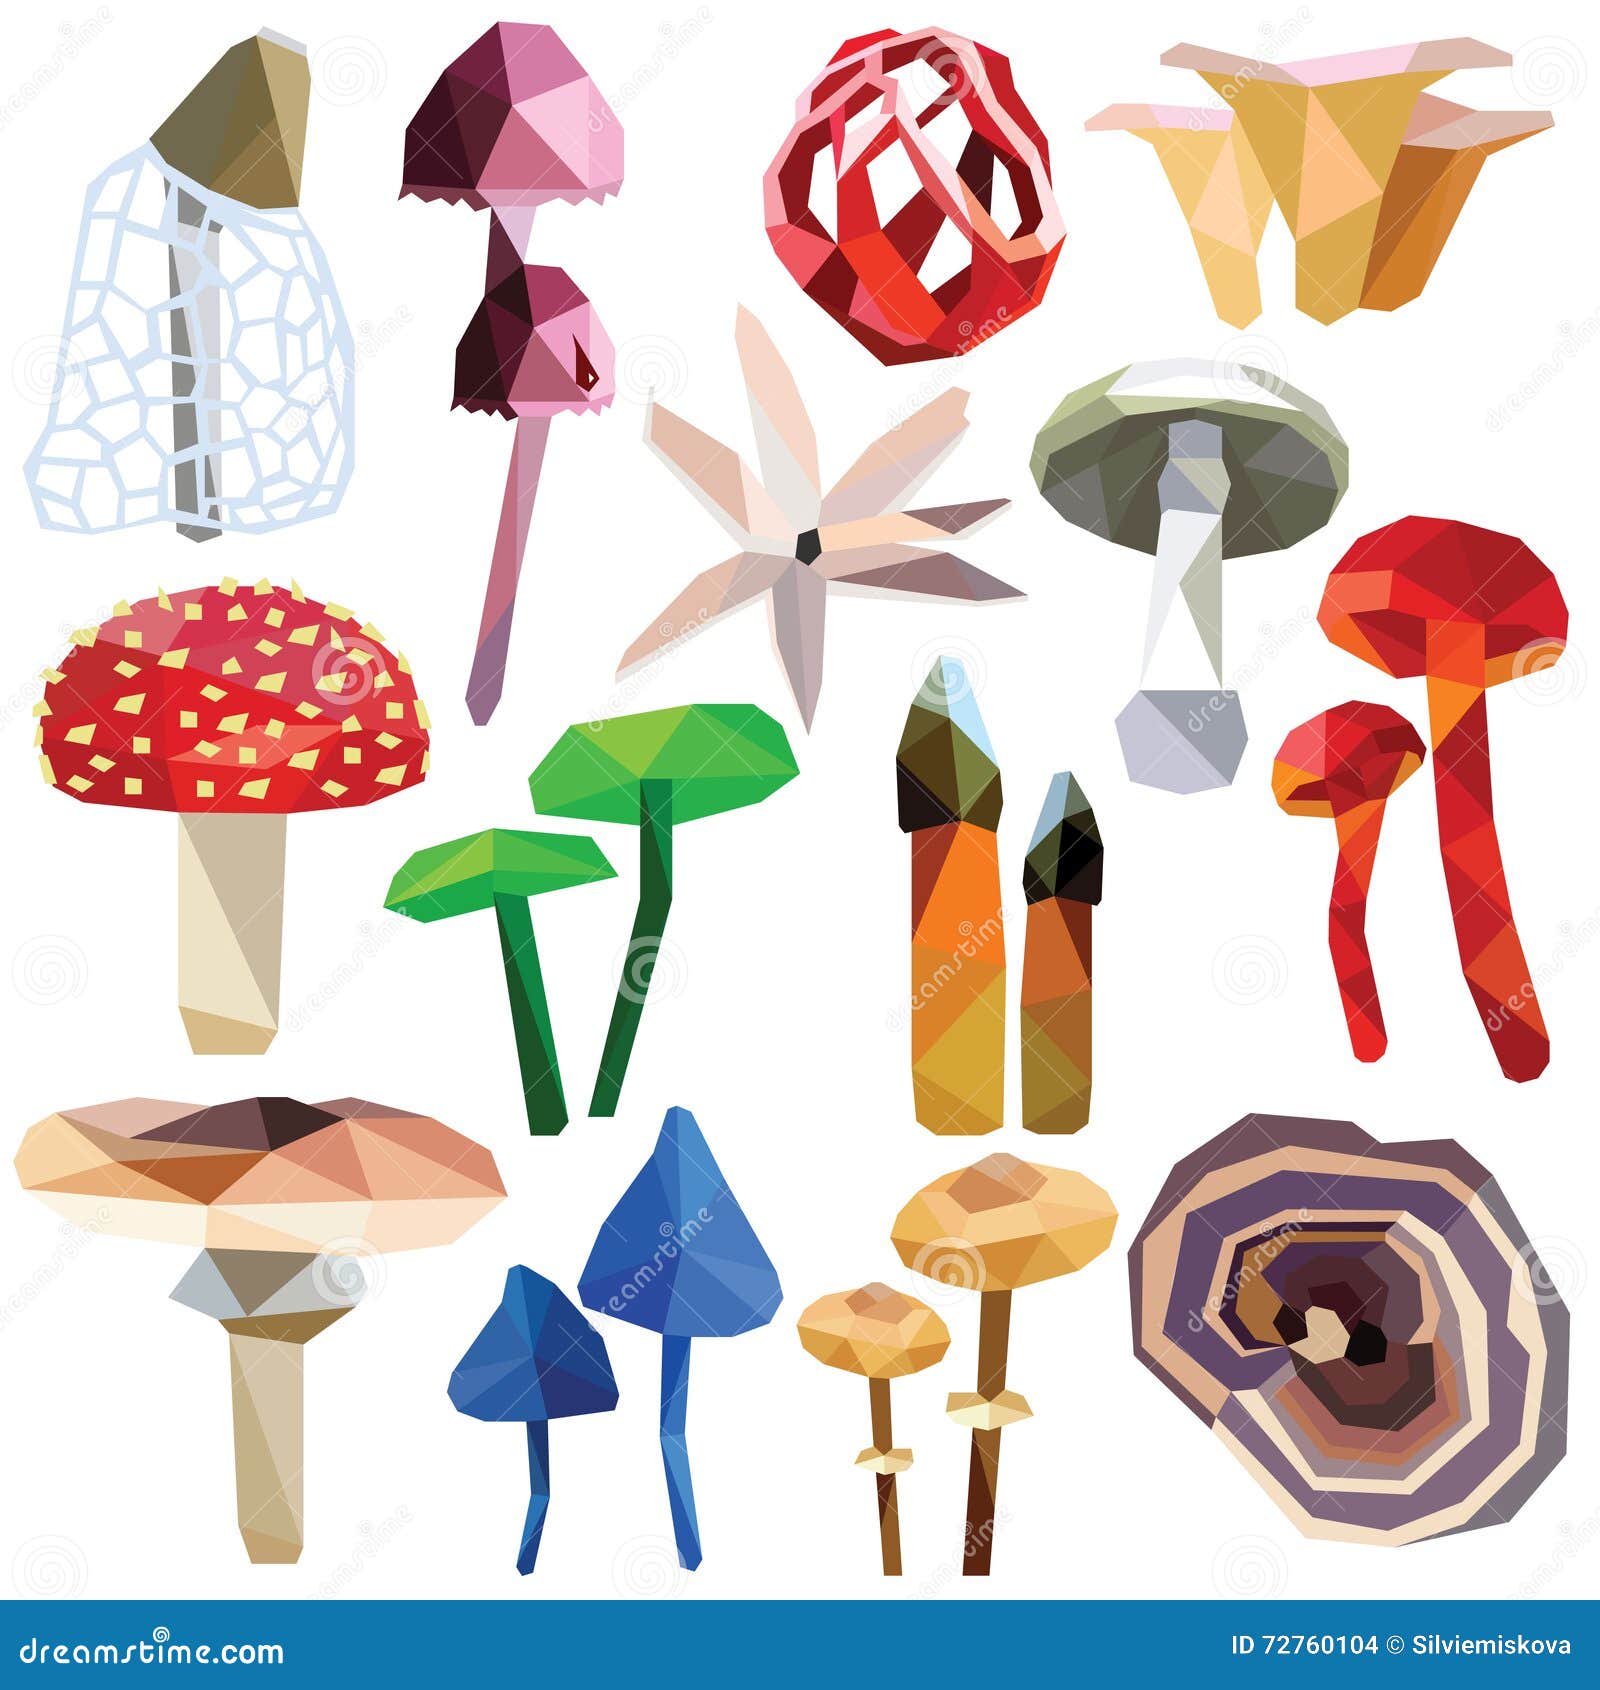 poisonous mushroom set.